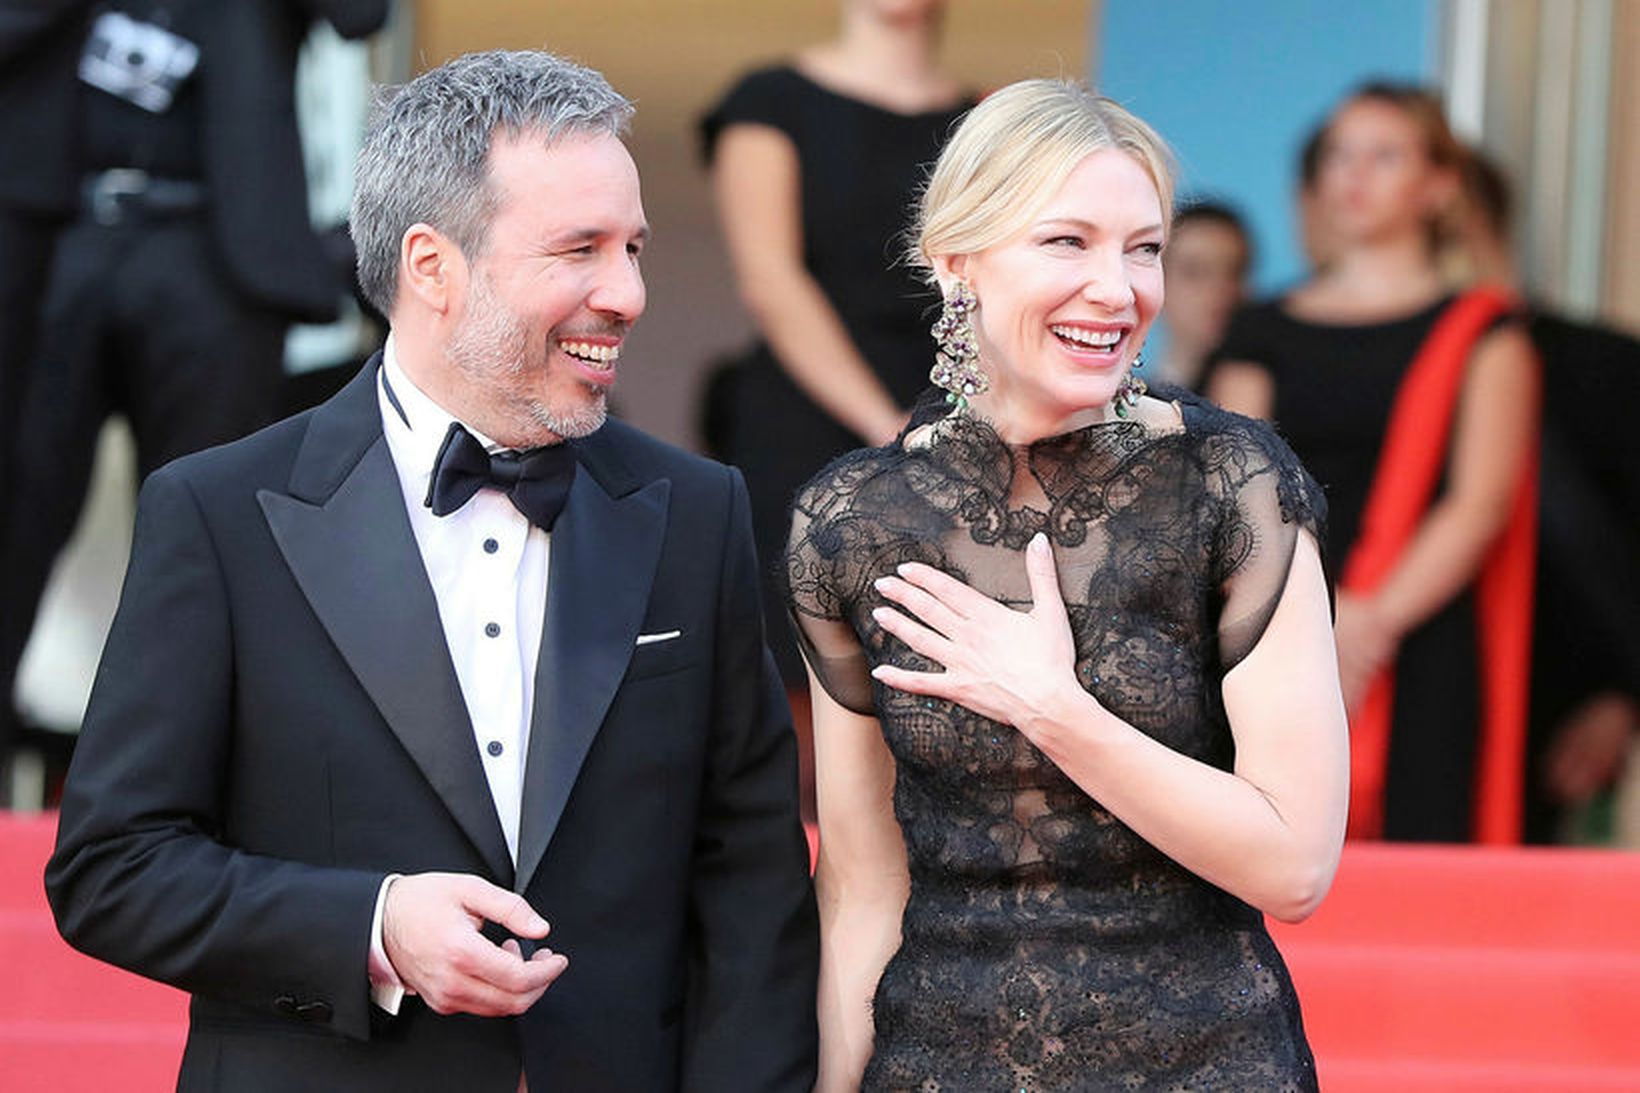 Kanadíski leikstjórinn Denis Villeneuve gekk rauða dreglinn með Cate Blanchett.